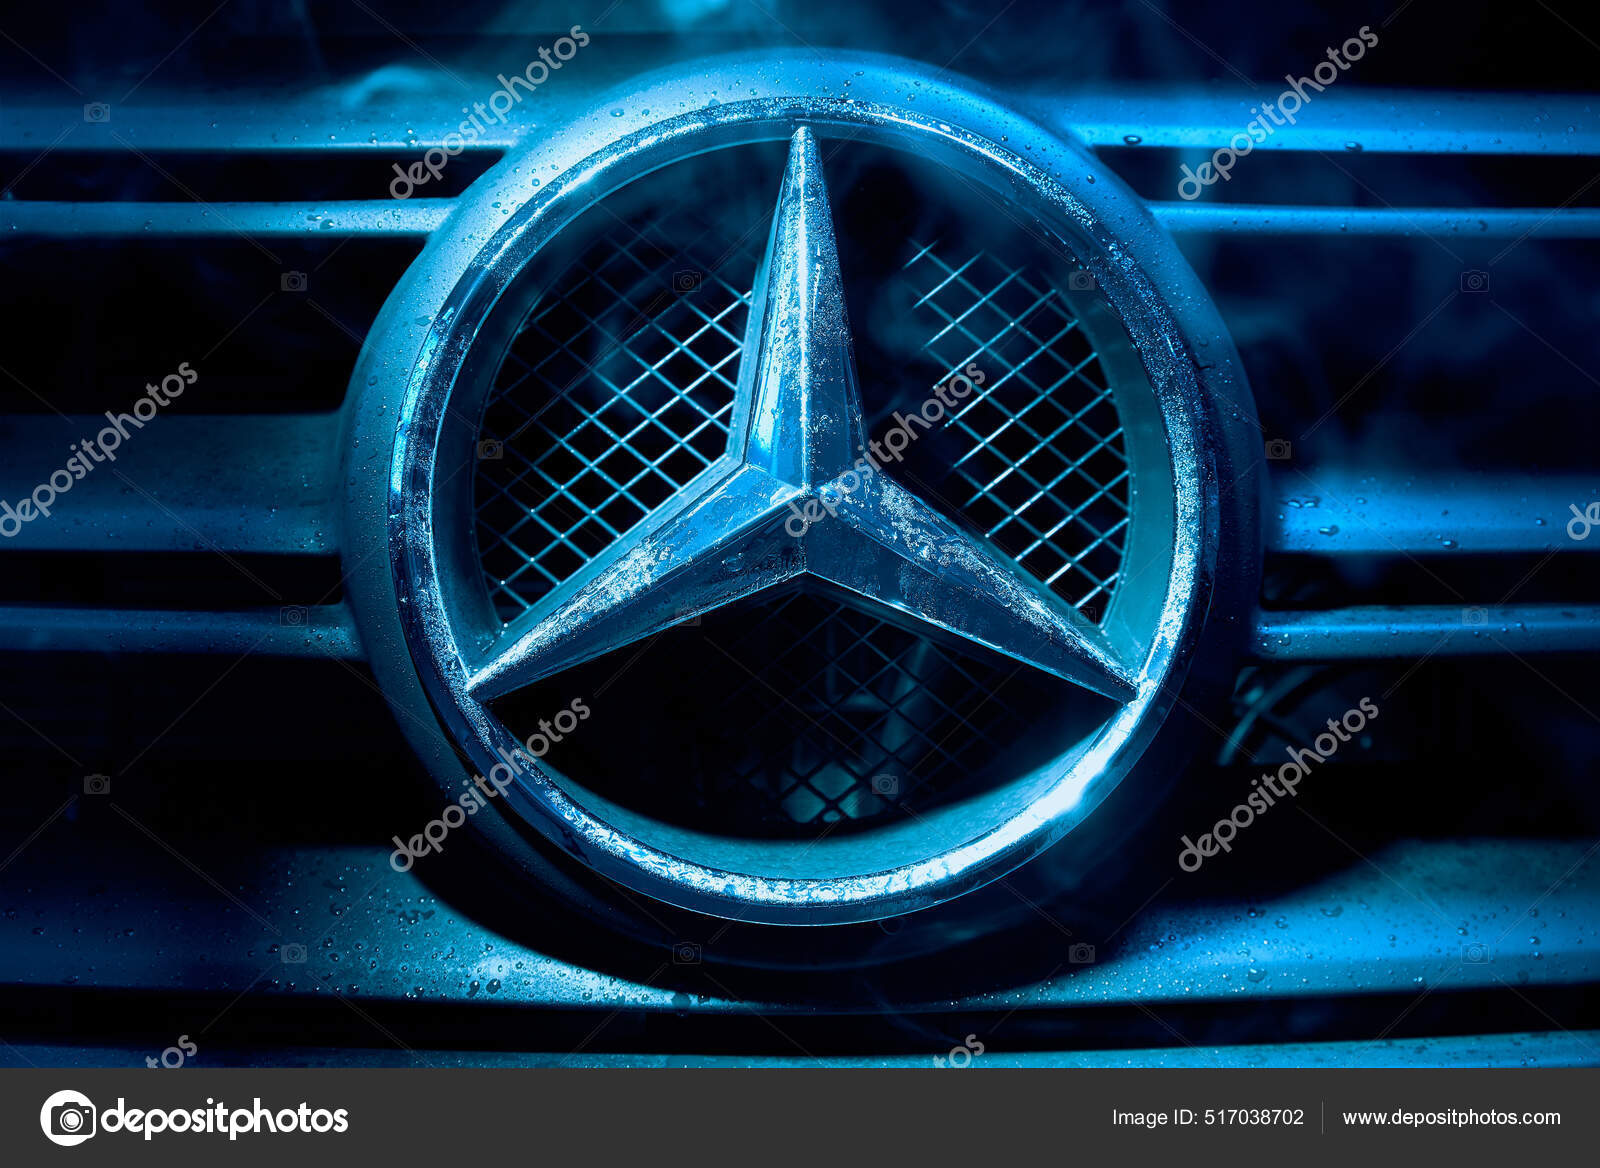 Mercedes Car Logo Close – Stock Editorial Photo © absurdov #517038702